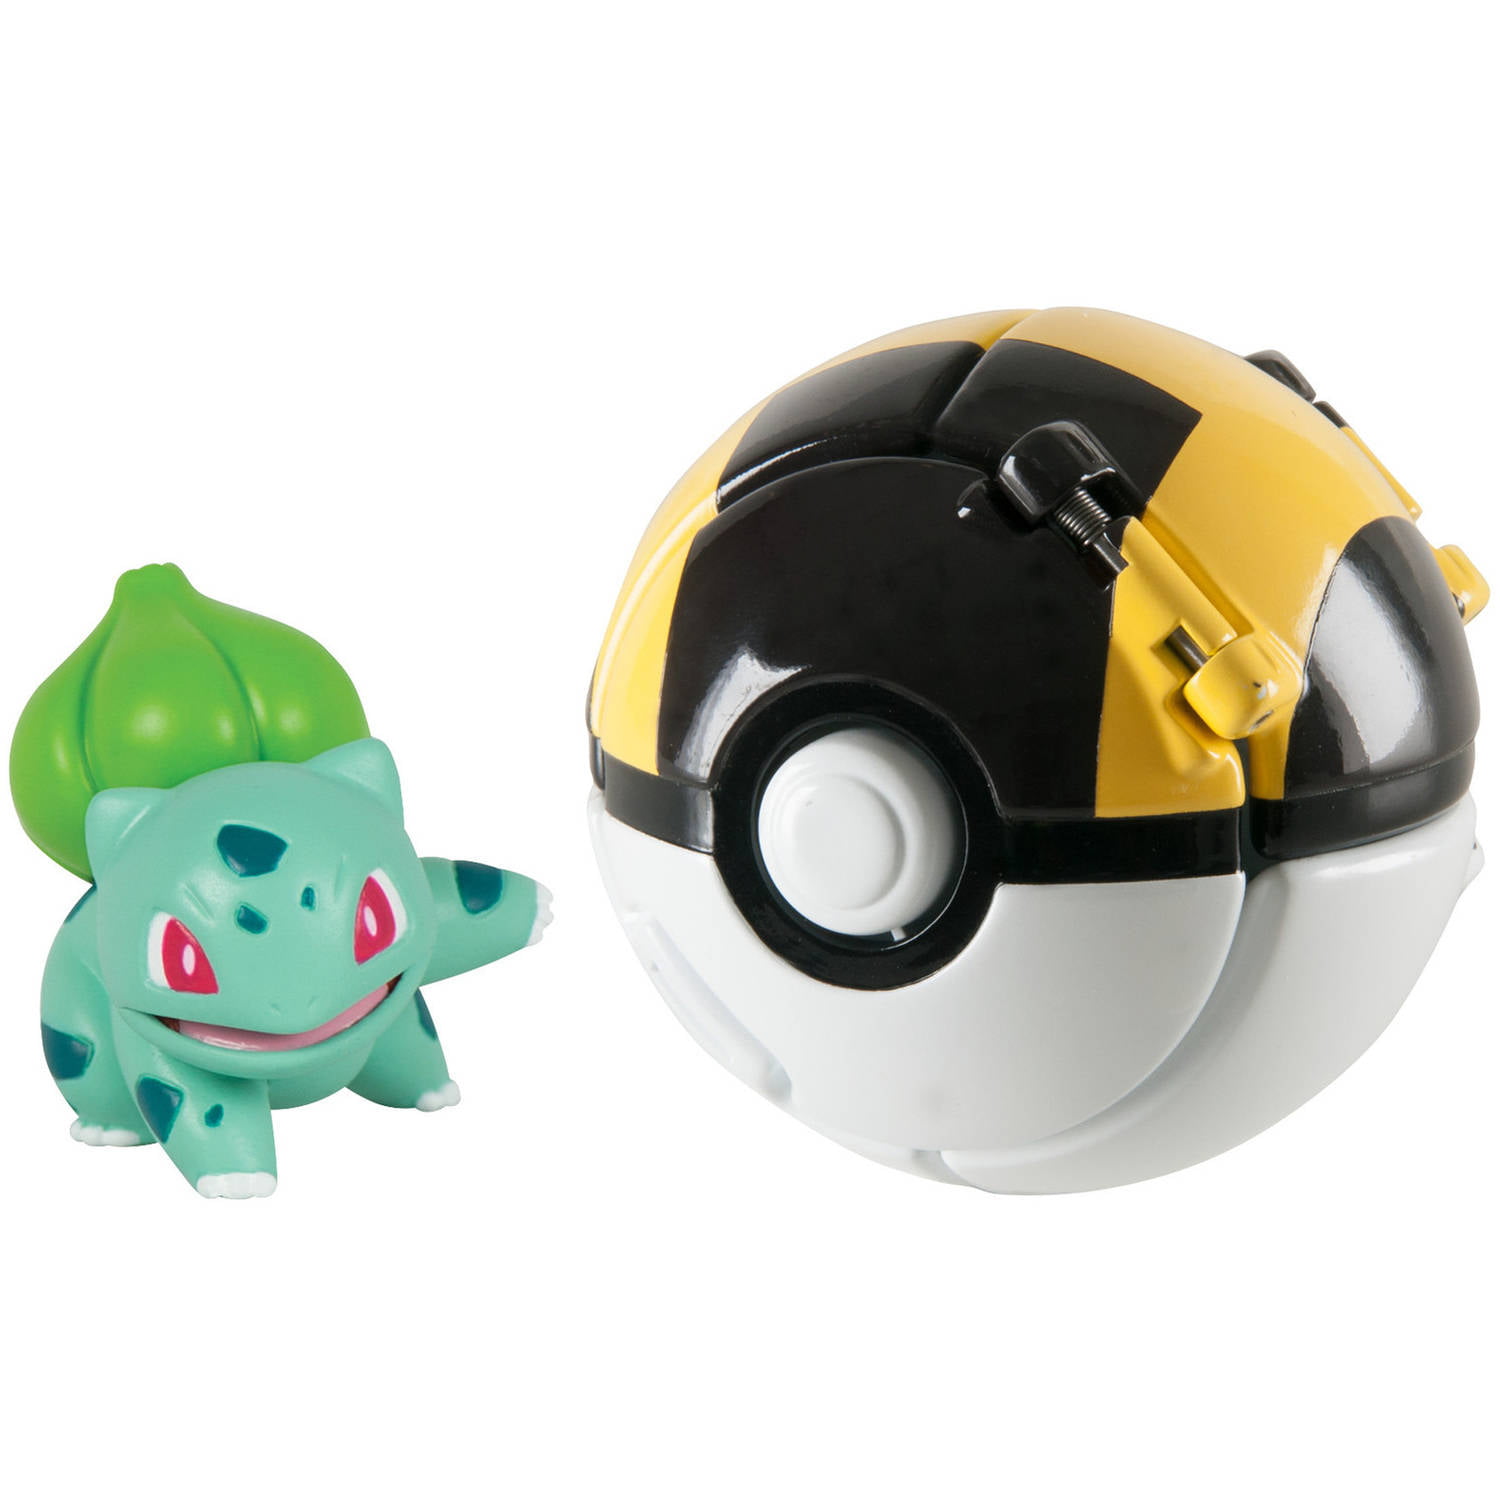 Tomy Pokemon Bulbasaur Throw N Pop Ultra Ball Poke Action Figure Child Gift Toys 